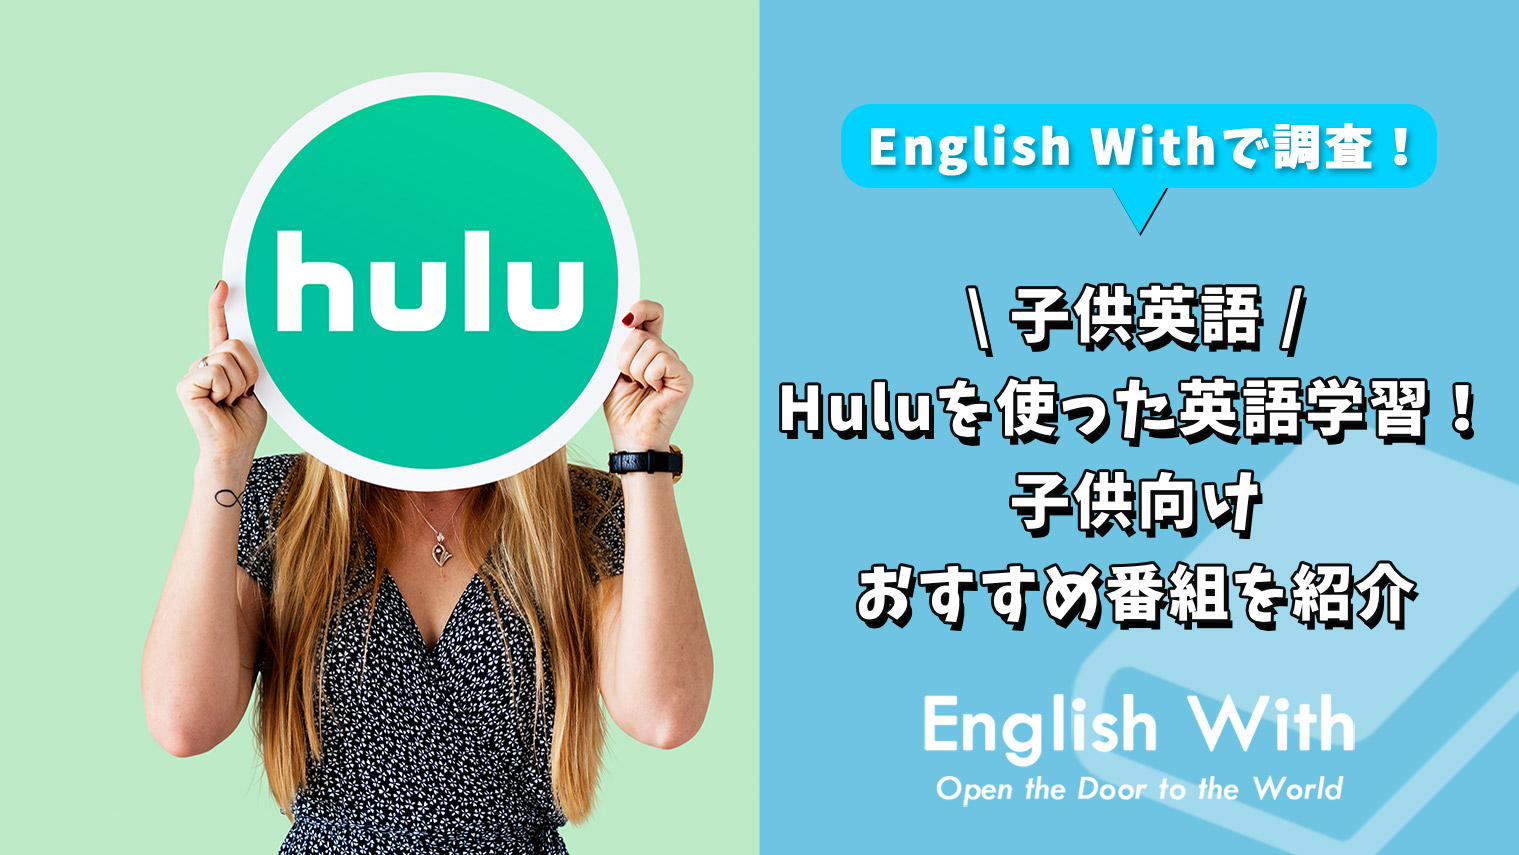 Huluを使った英語学習 子供向けおすすめ番組を紹介 8作品 おすすめ英会話 英語学習の比較 ランキング English With